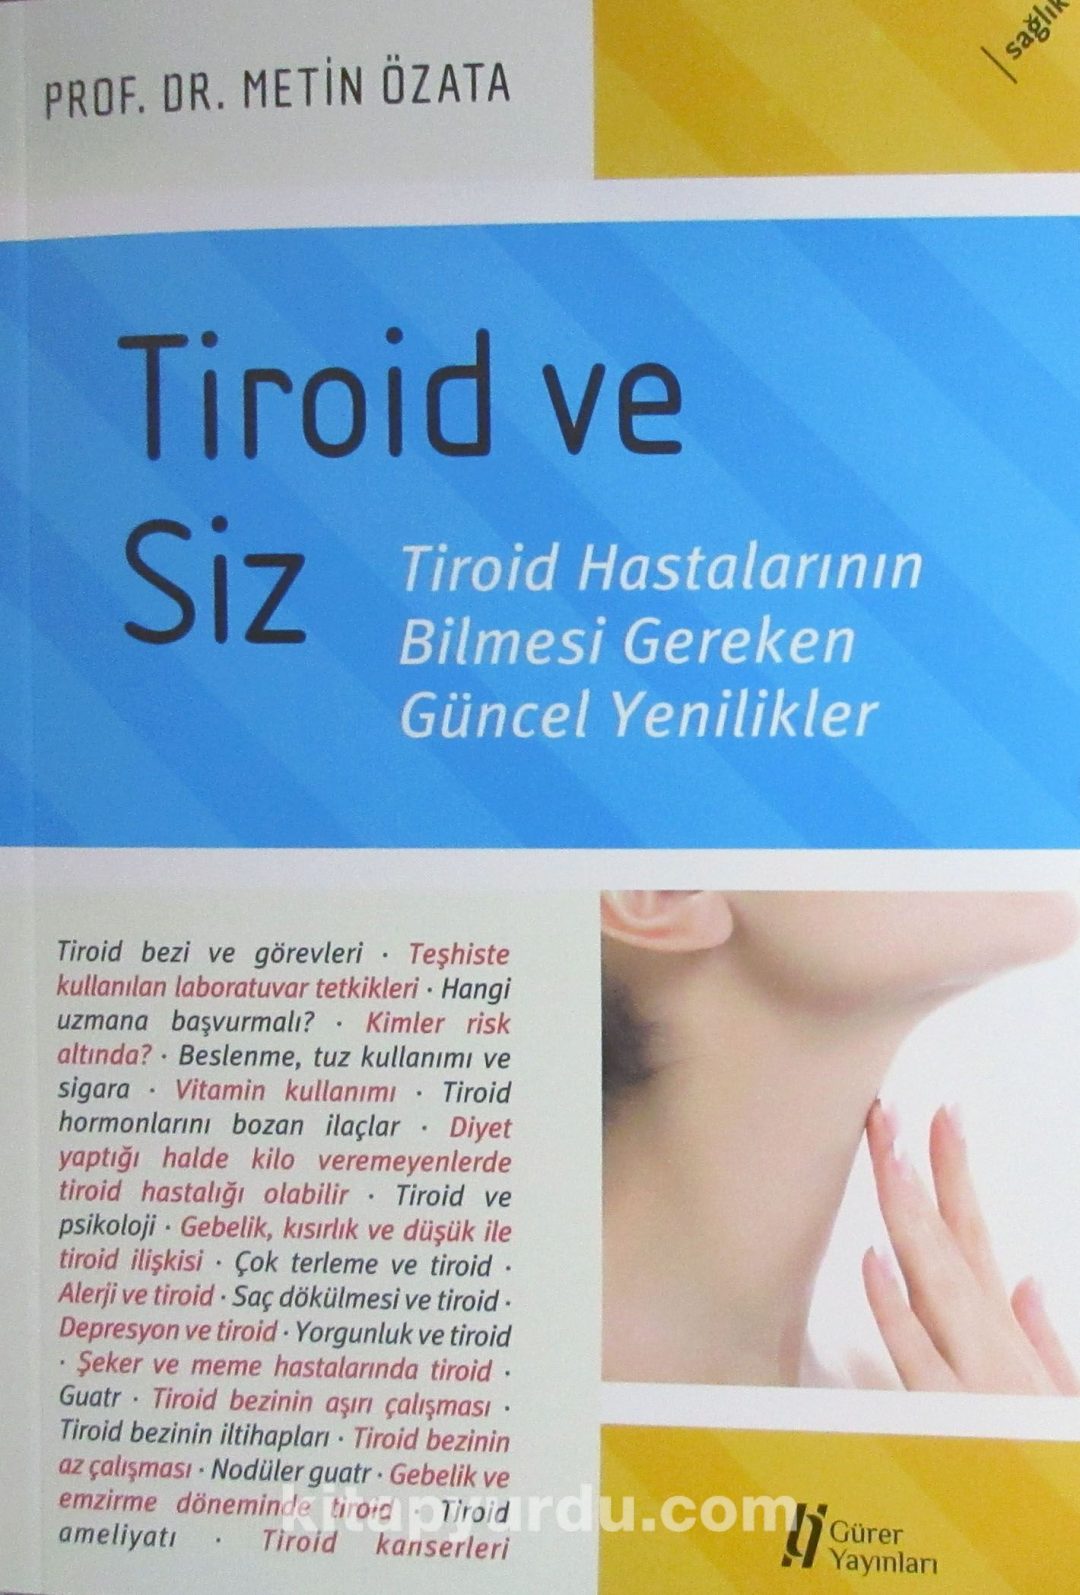 Tiroid ve Siz & Troid Hastalarının Bilmesi Gereken Güncel Yenilikler